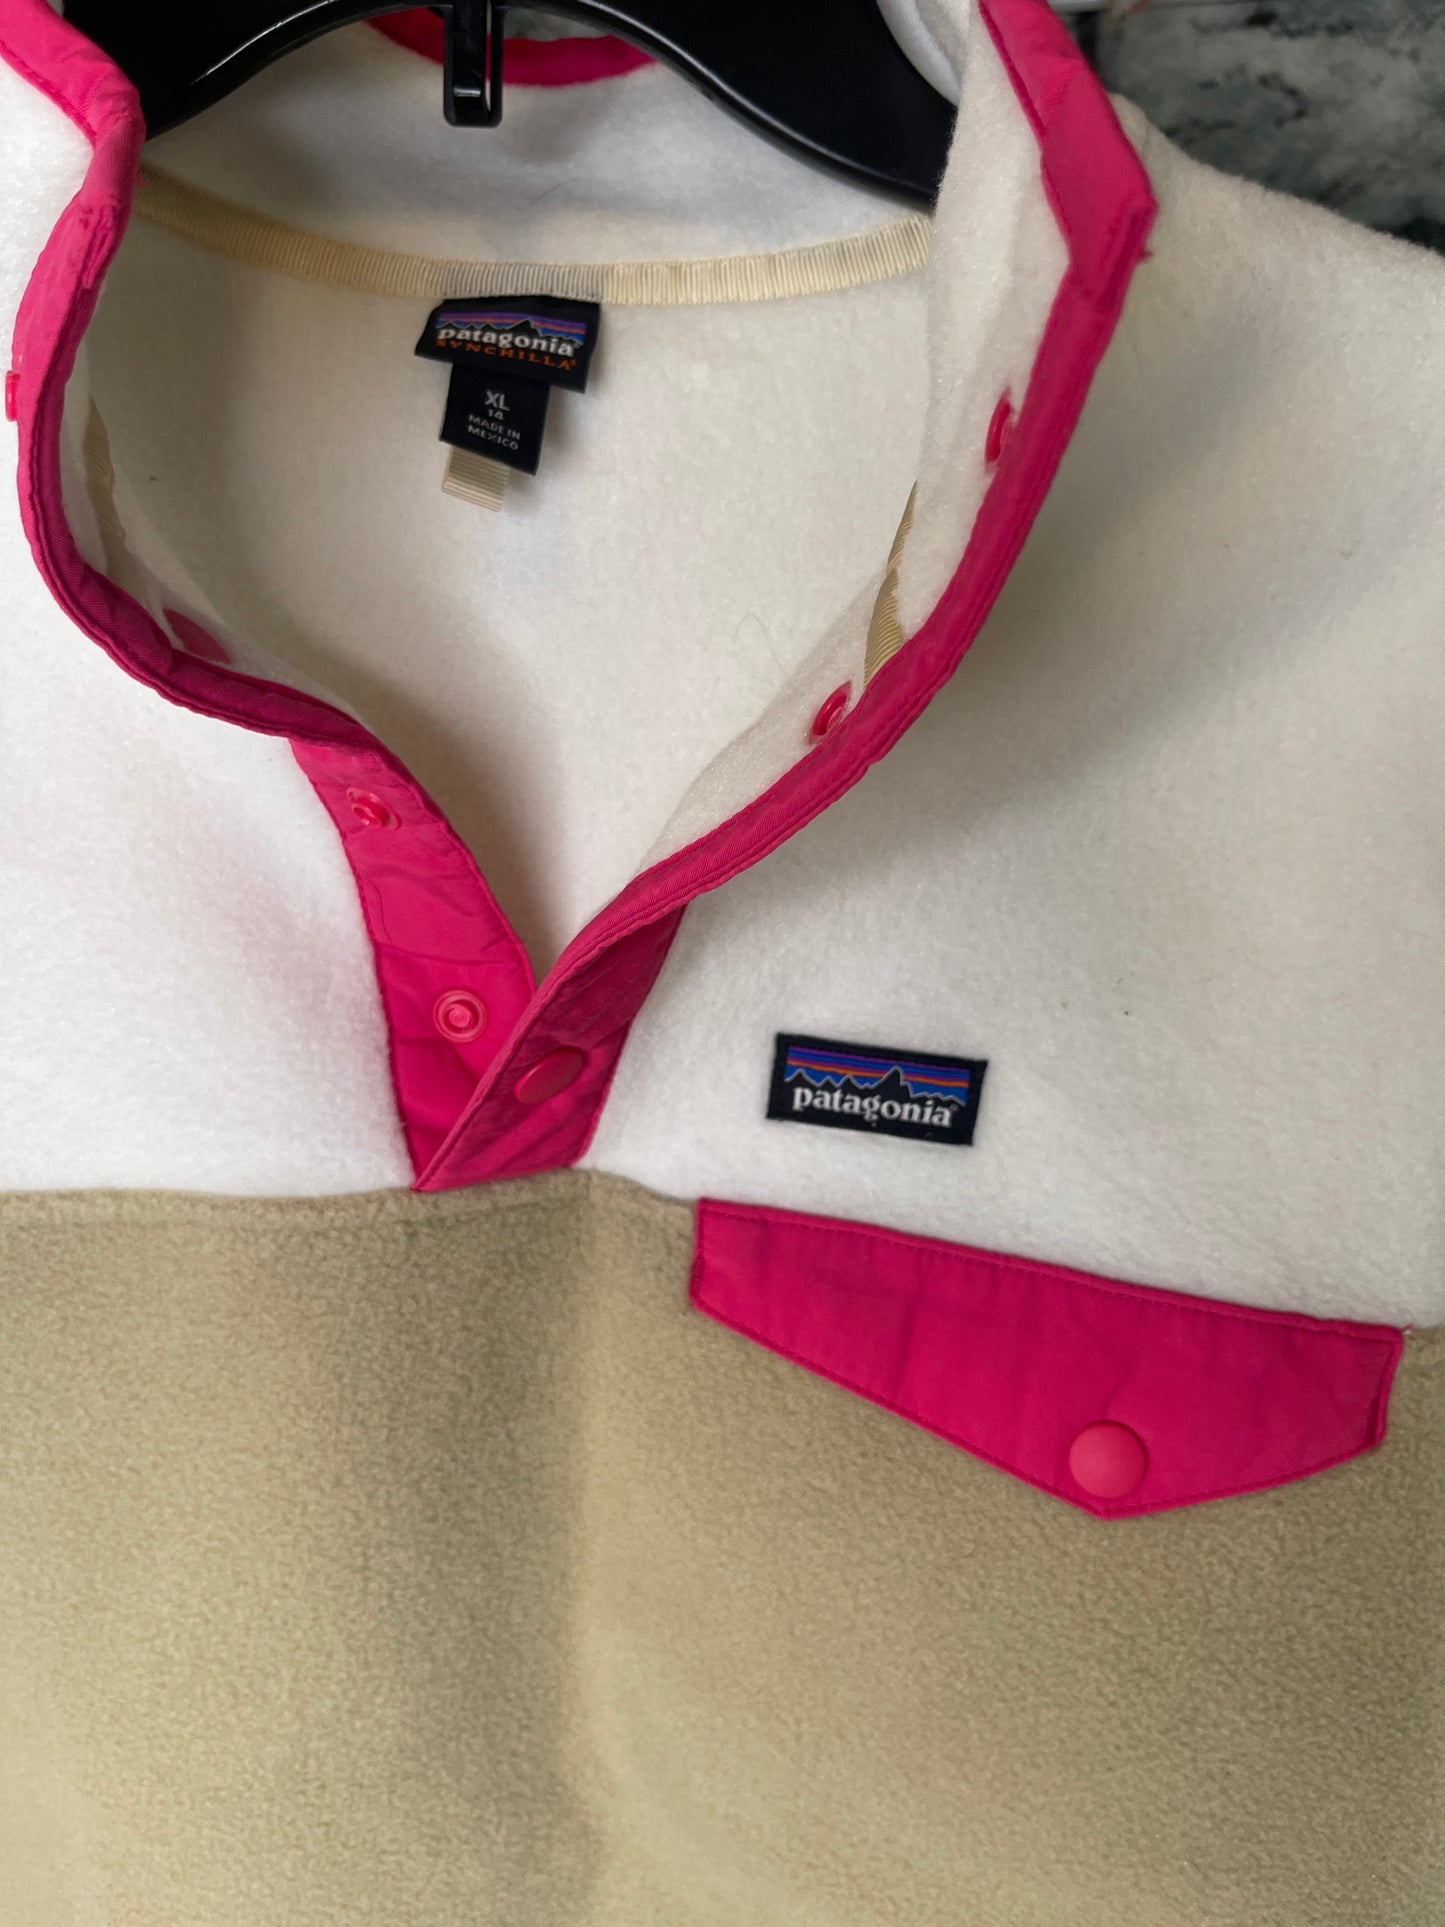 Patagonia yellow pink tan pullover shirt girls sz xl (14)